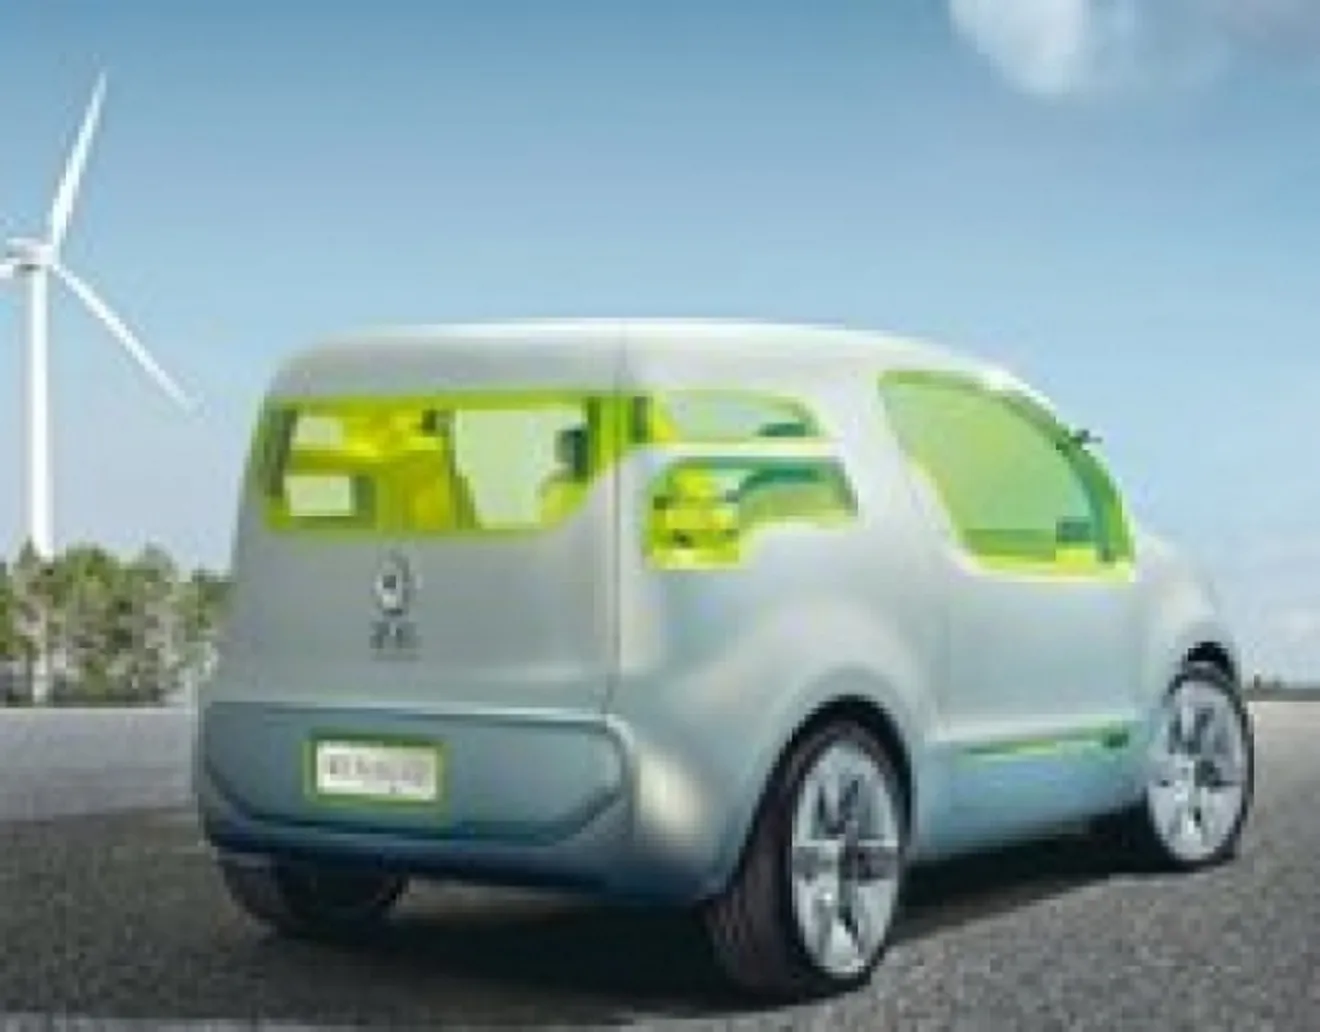 Renault-Nissan introducirán su vehículo eléctrico en Mónaco en 2011